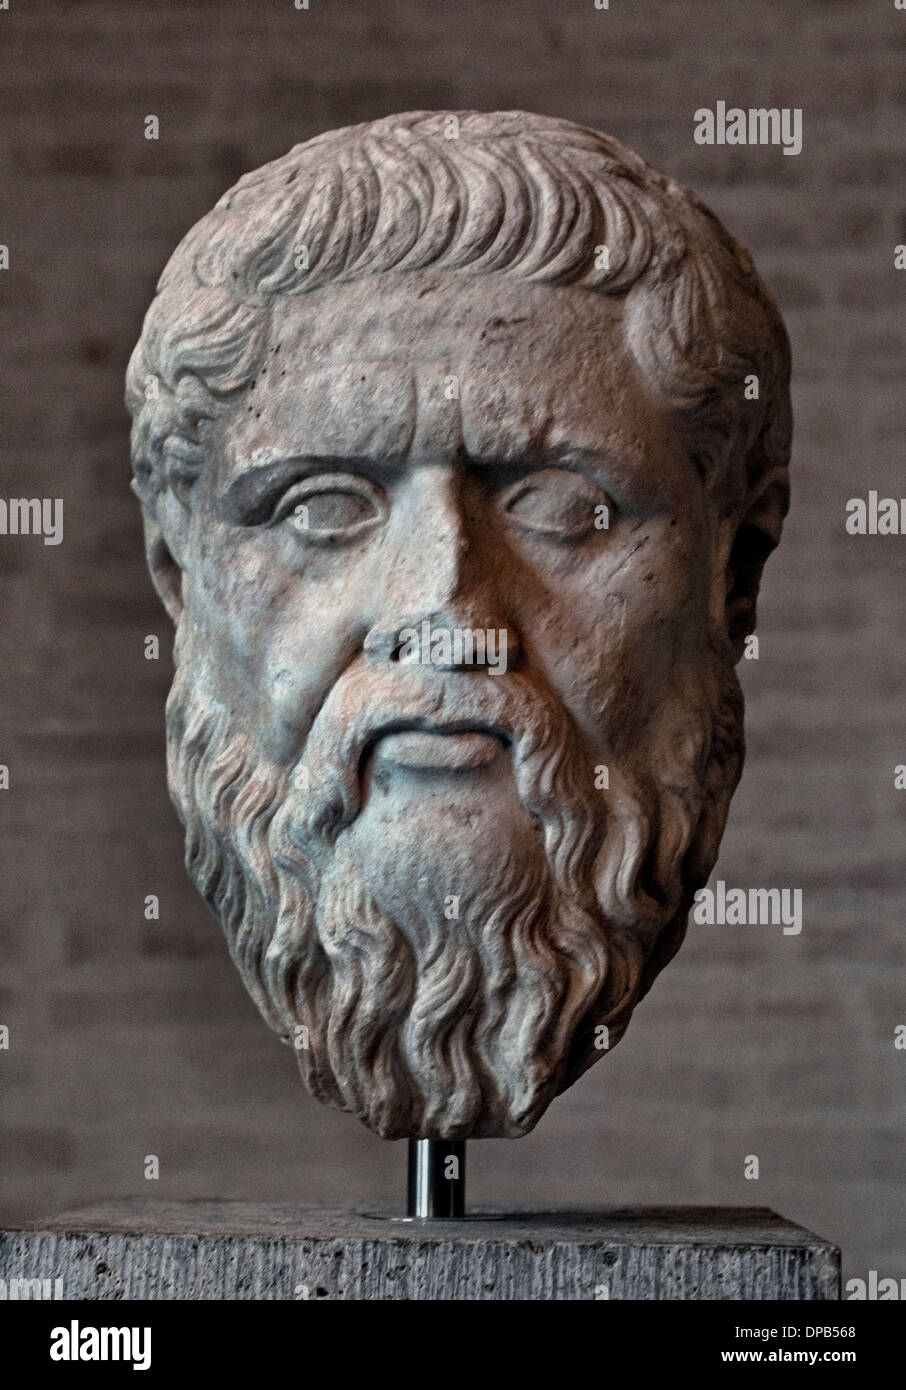 Plato oder Platon 427-c. 347 v. Chr. Philosophen Philosophie Griechisch Griechenland Stockfoto